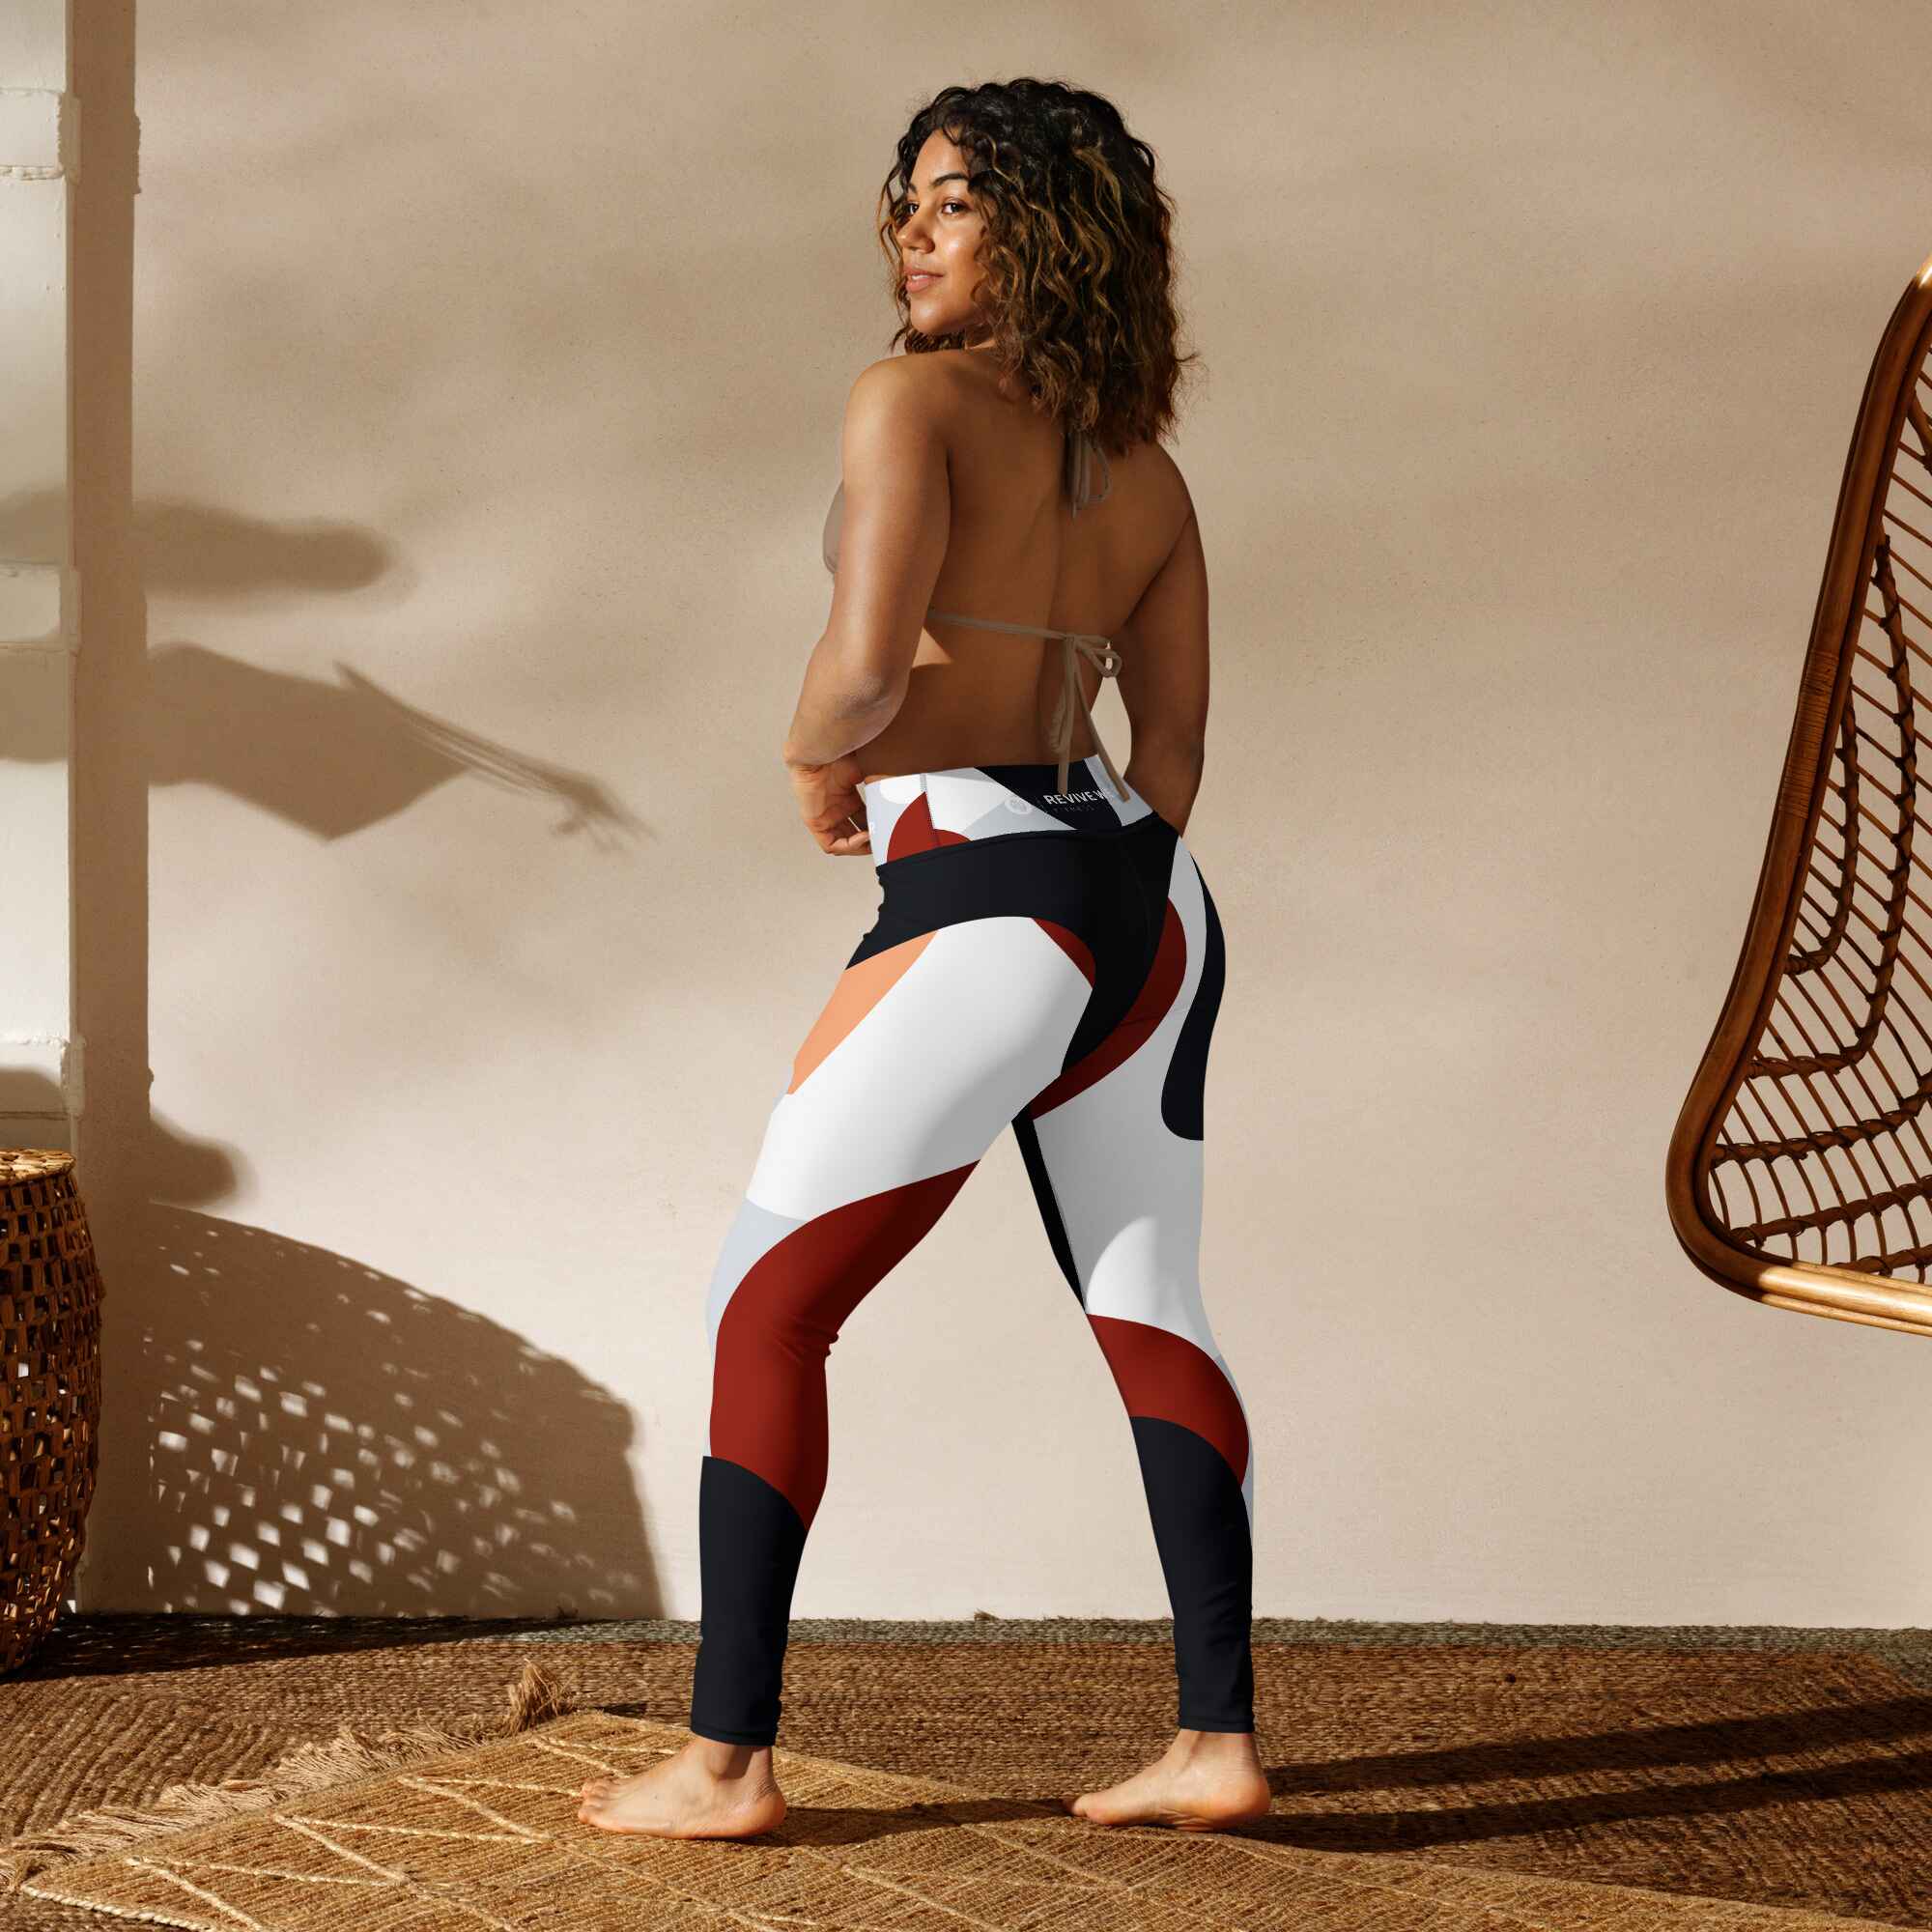 Women's Patterned Leggings Australia | Abstract Design